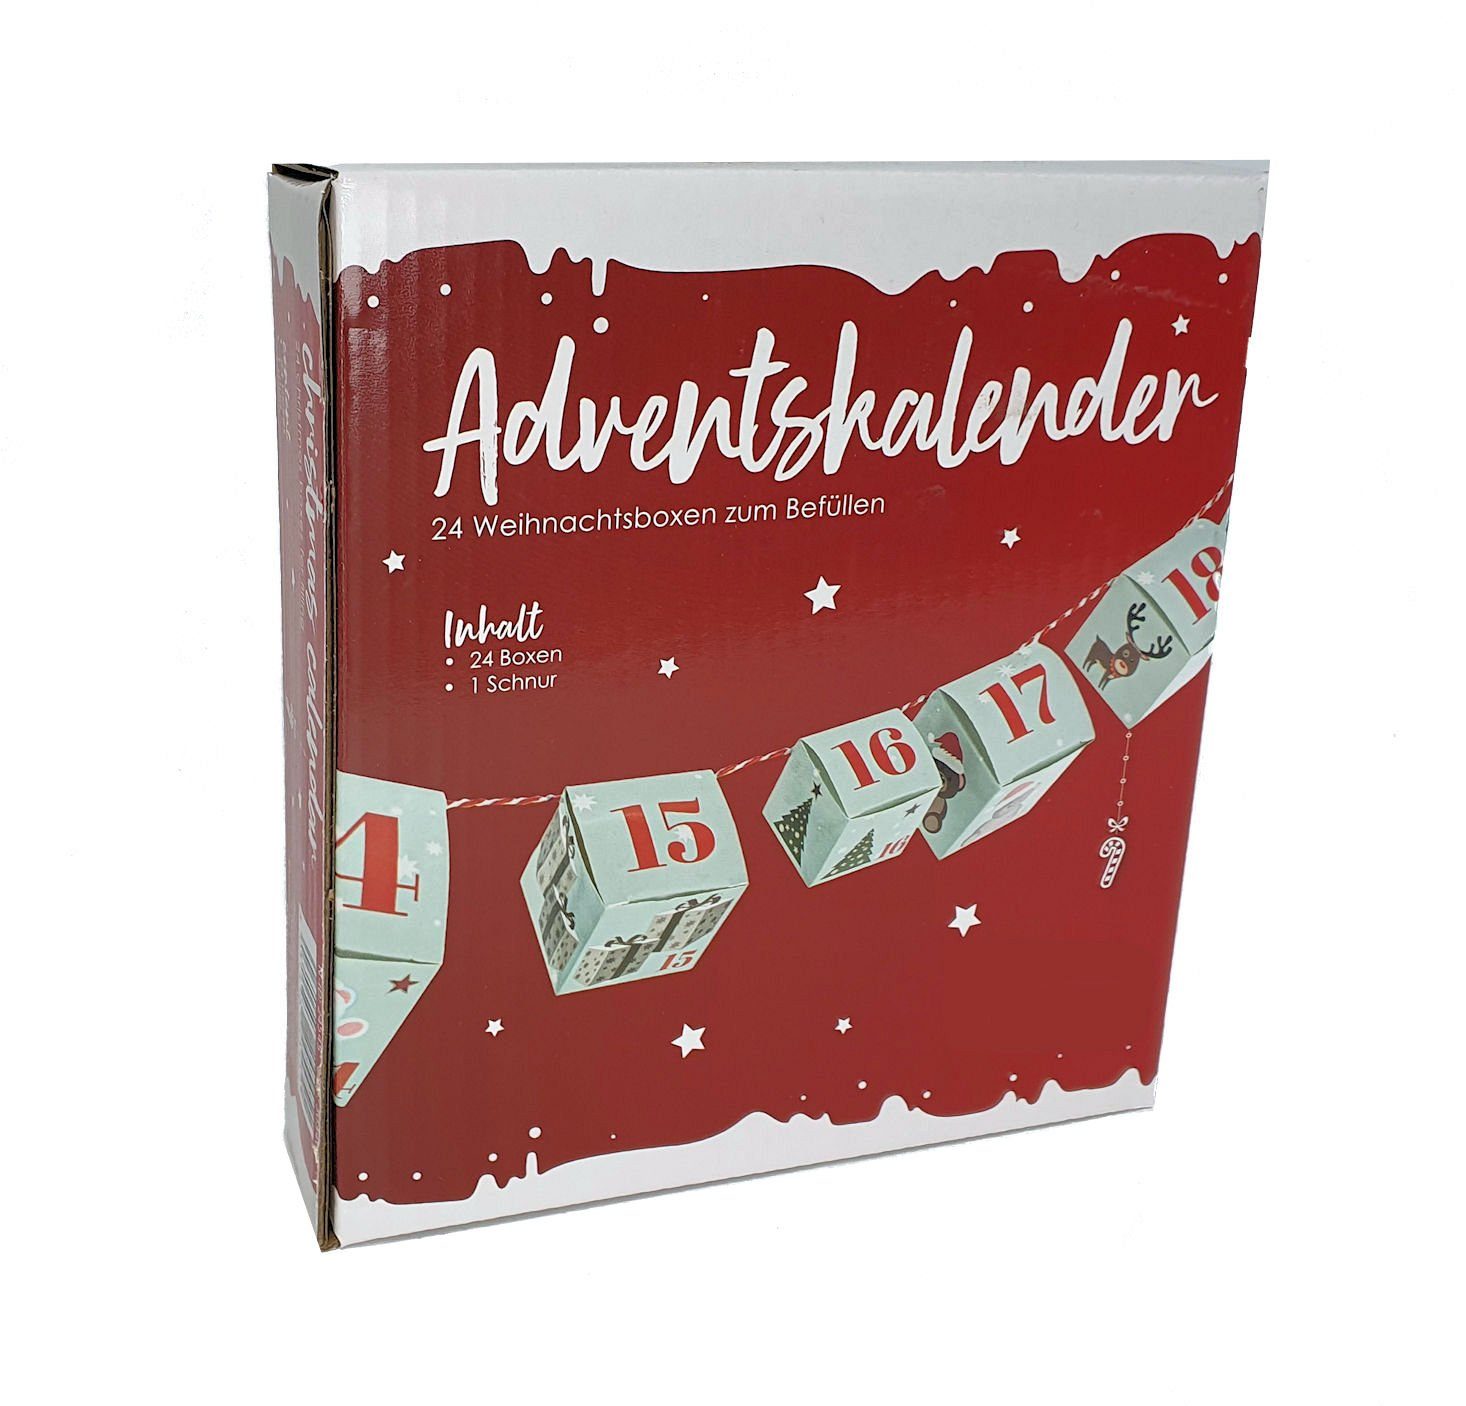 Spetebo befüllbarer Adventskalender 24 Weihnachtsboxen zum Adventskalender, zum befüllen - Befüllen